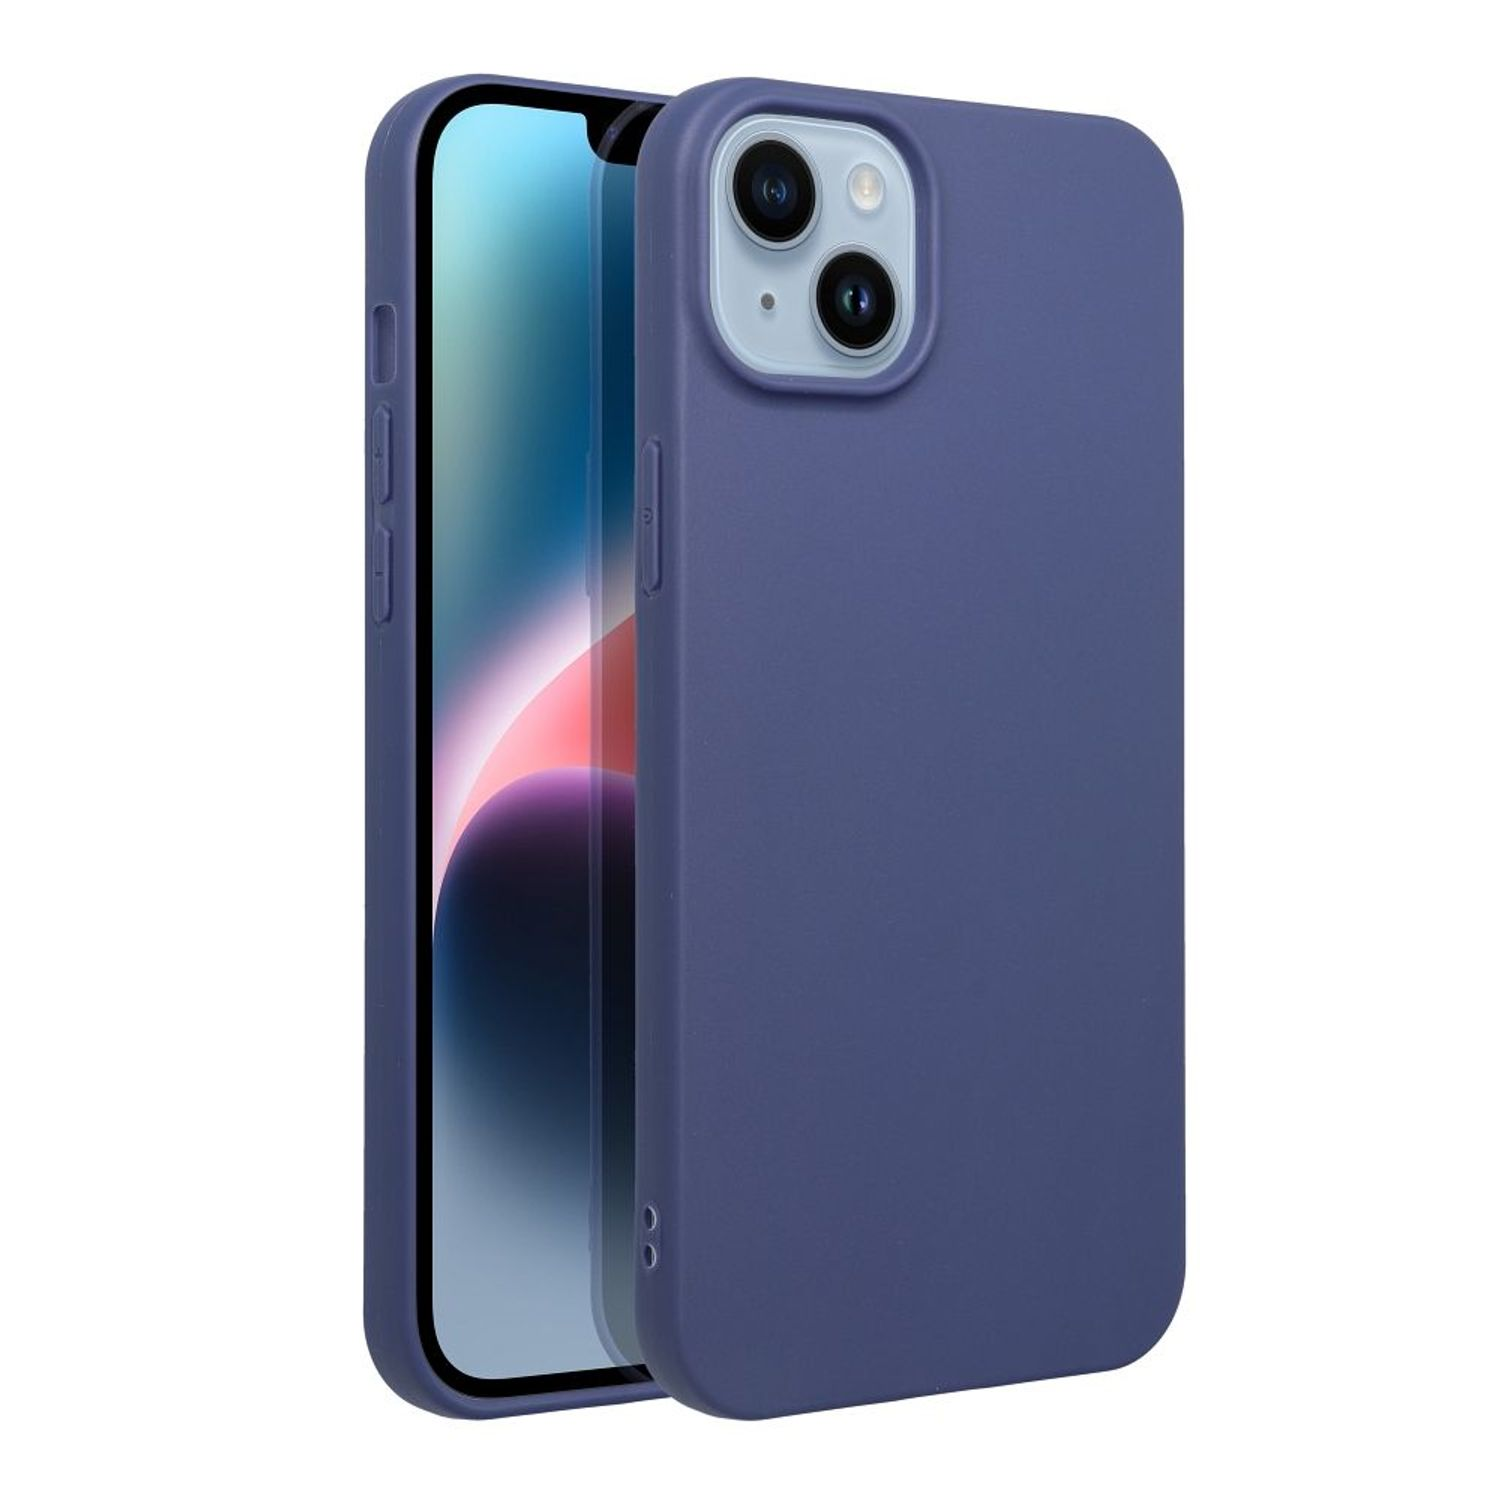 Blau smart Case, 2021, P Backcover, DESIGN Huawei, KÖNIG